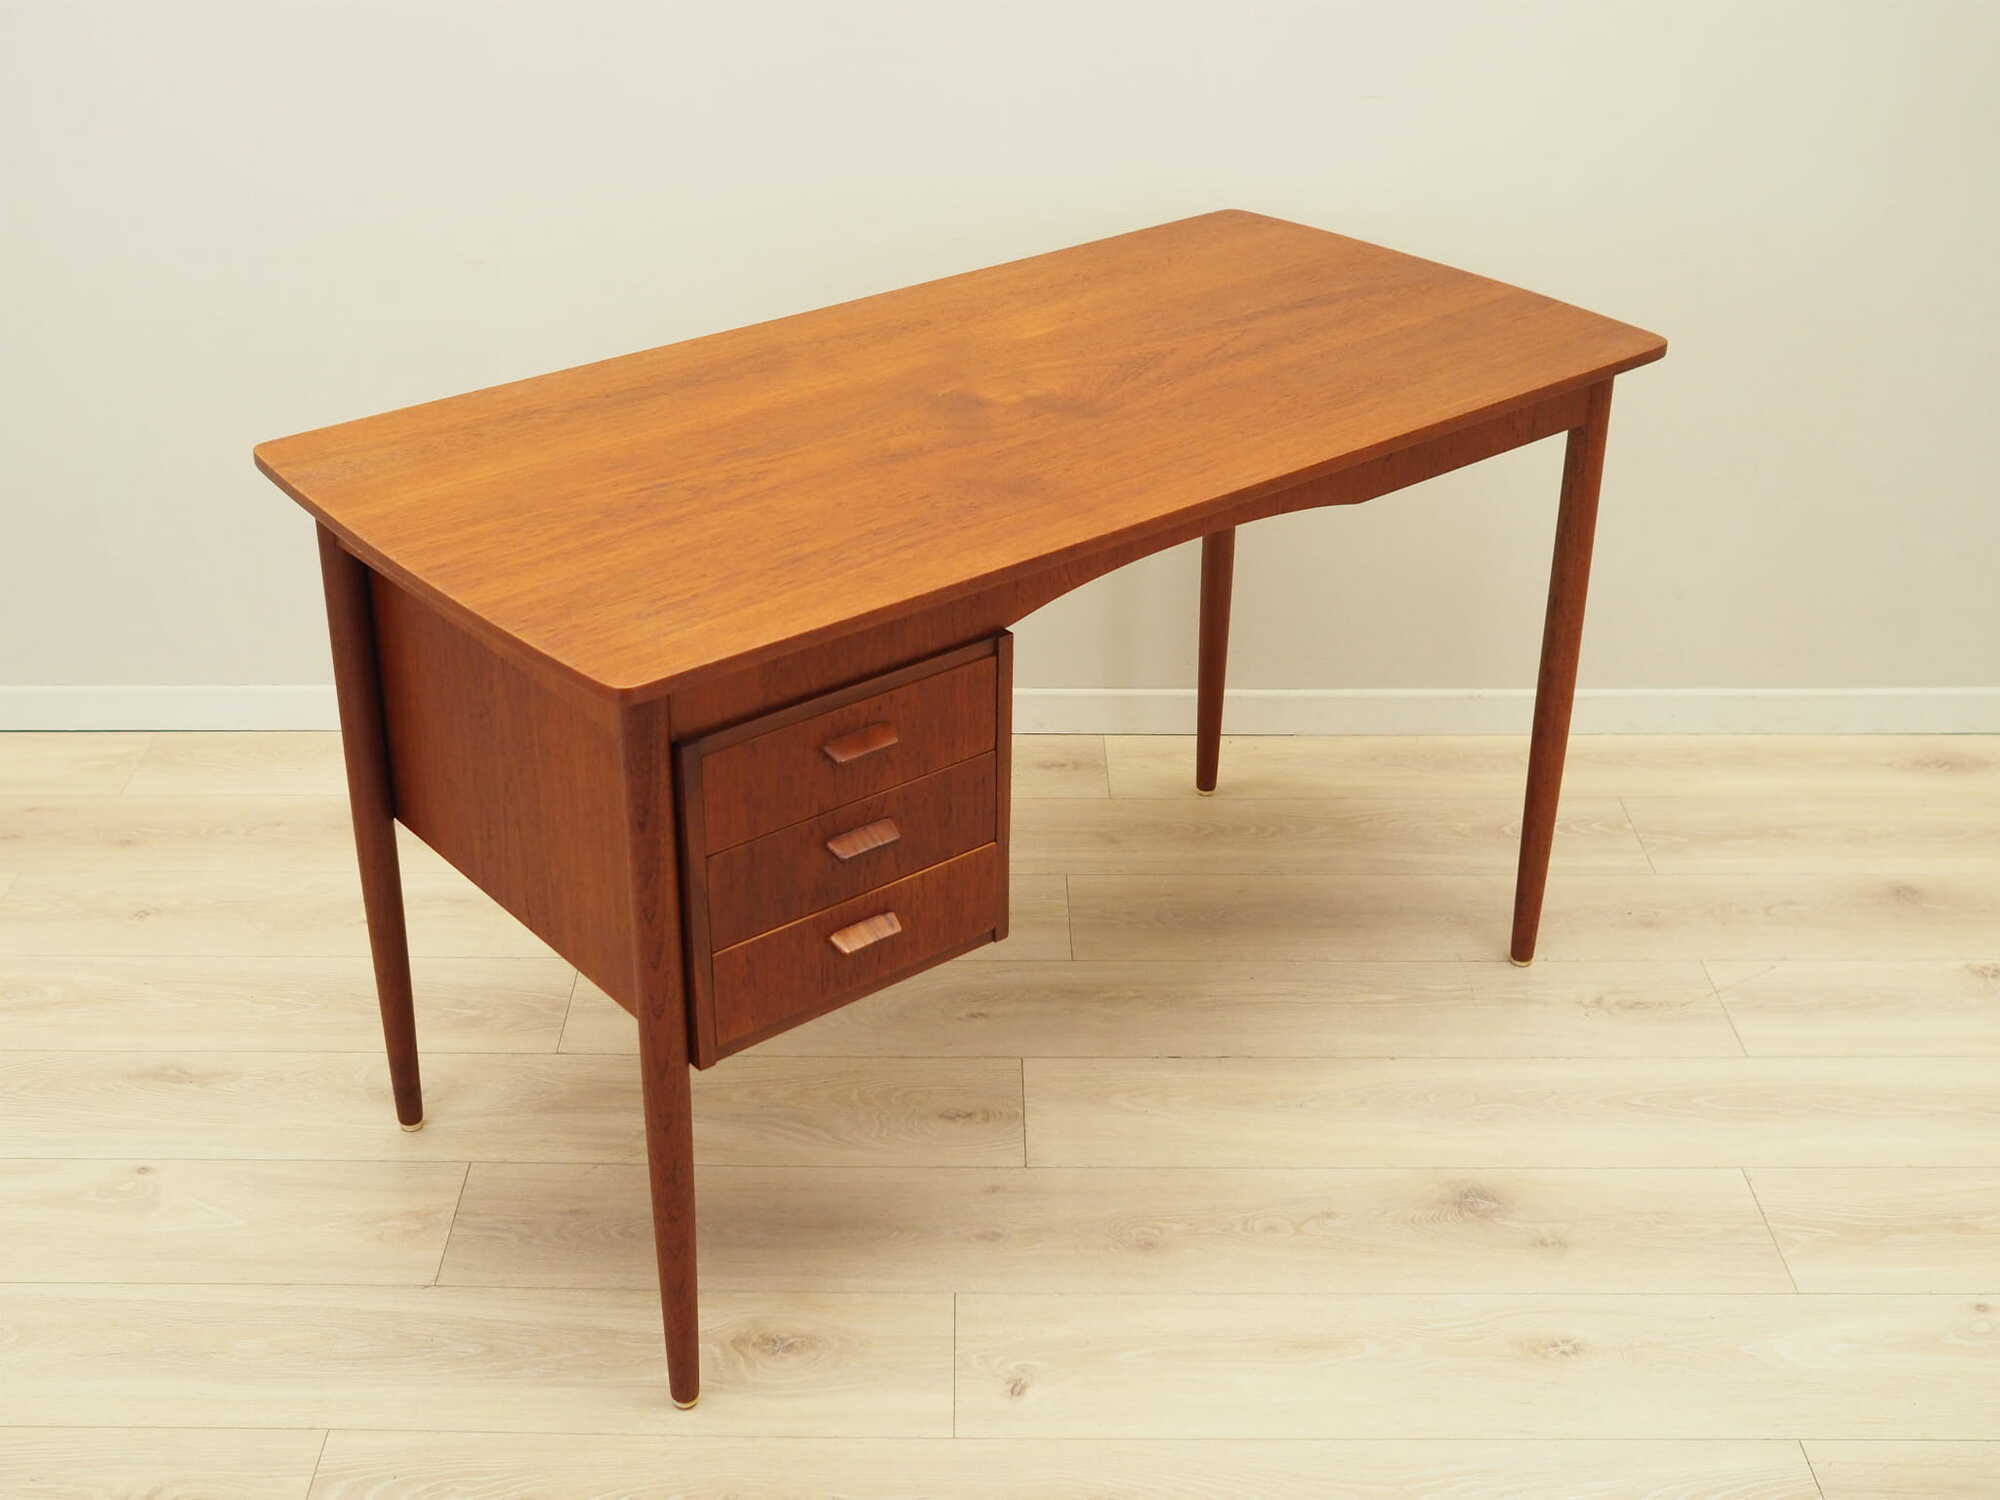 Schreibtisch Holz Braun 1970er Jahre  5